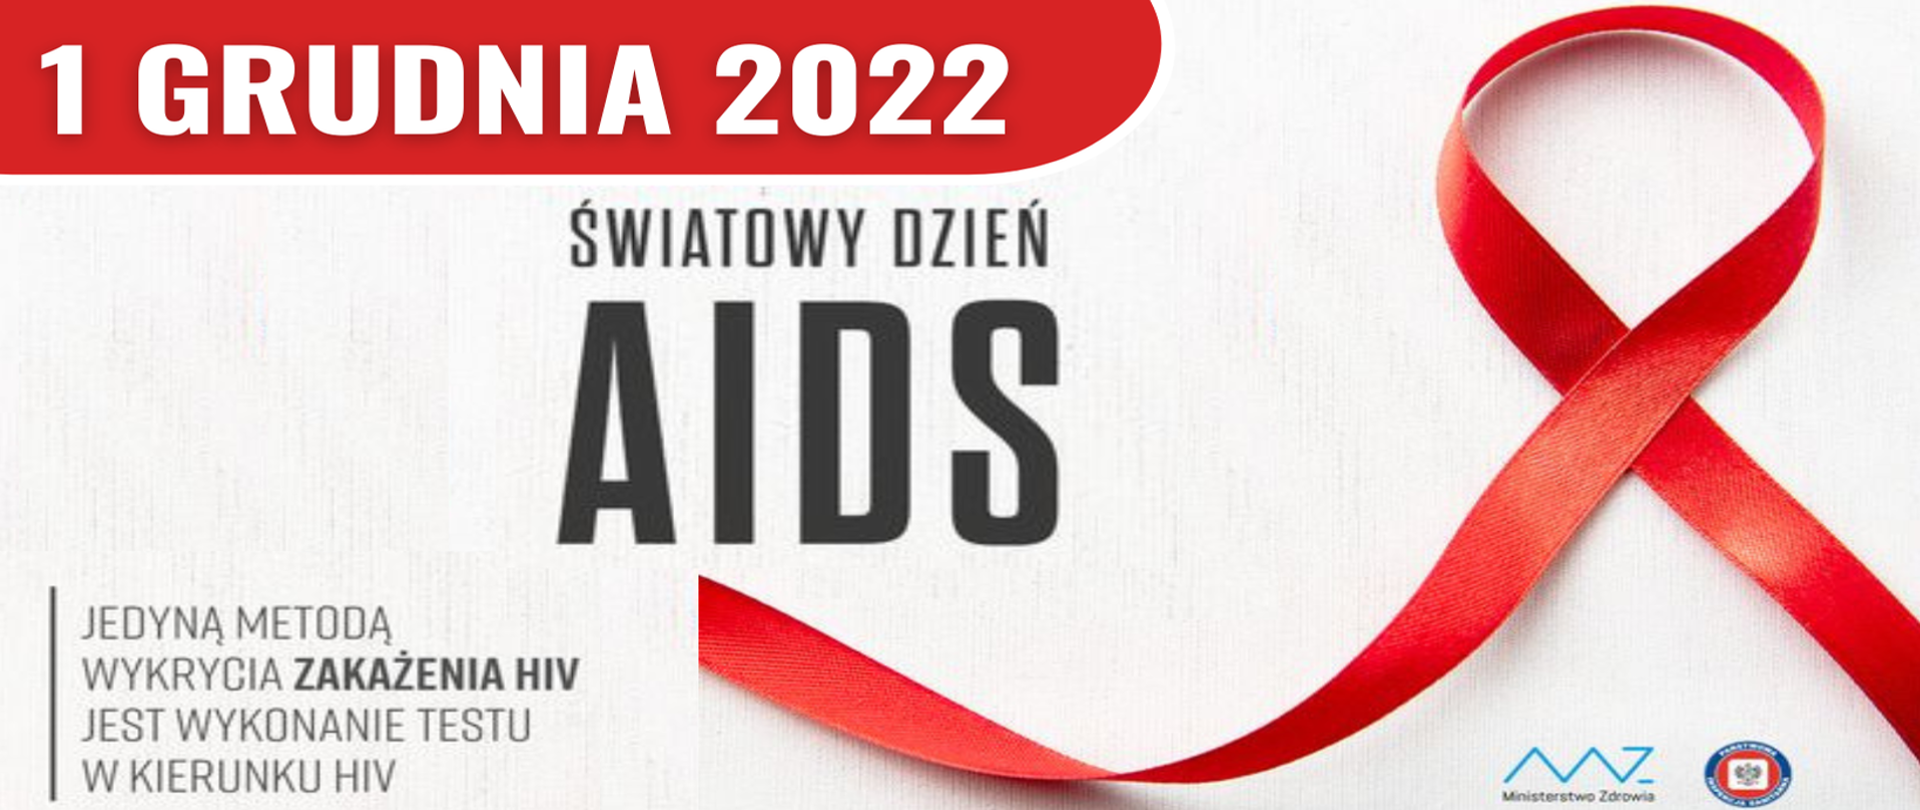 Napis "1 grudnia 2022 światowy dzień AIDS - Jedyną metodą wykrycia zakażenia HIV jest wykonanie testu w kierunku HIV" po prawej stronie czerwona kokardka - symbol światowego dnia AIDS